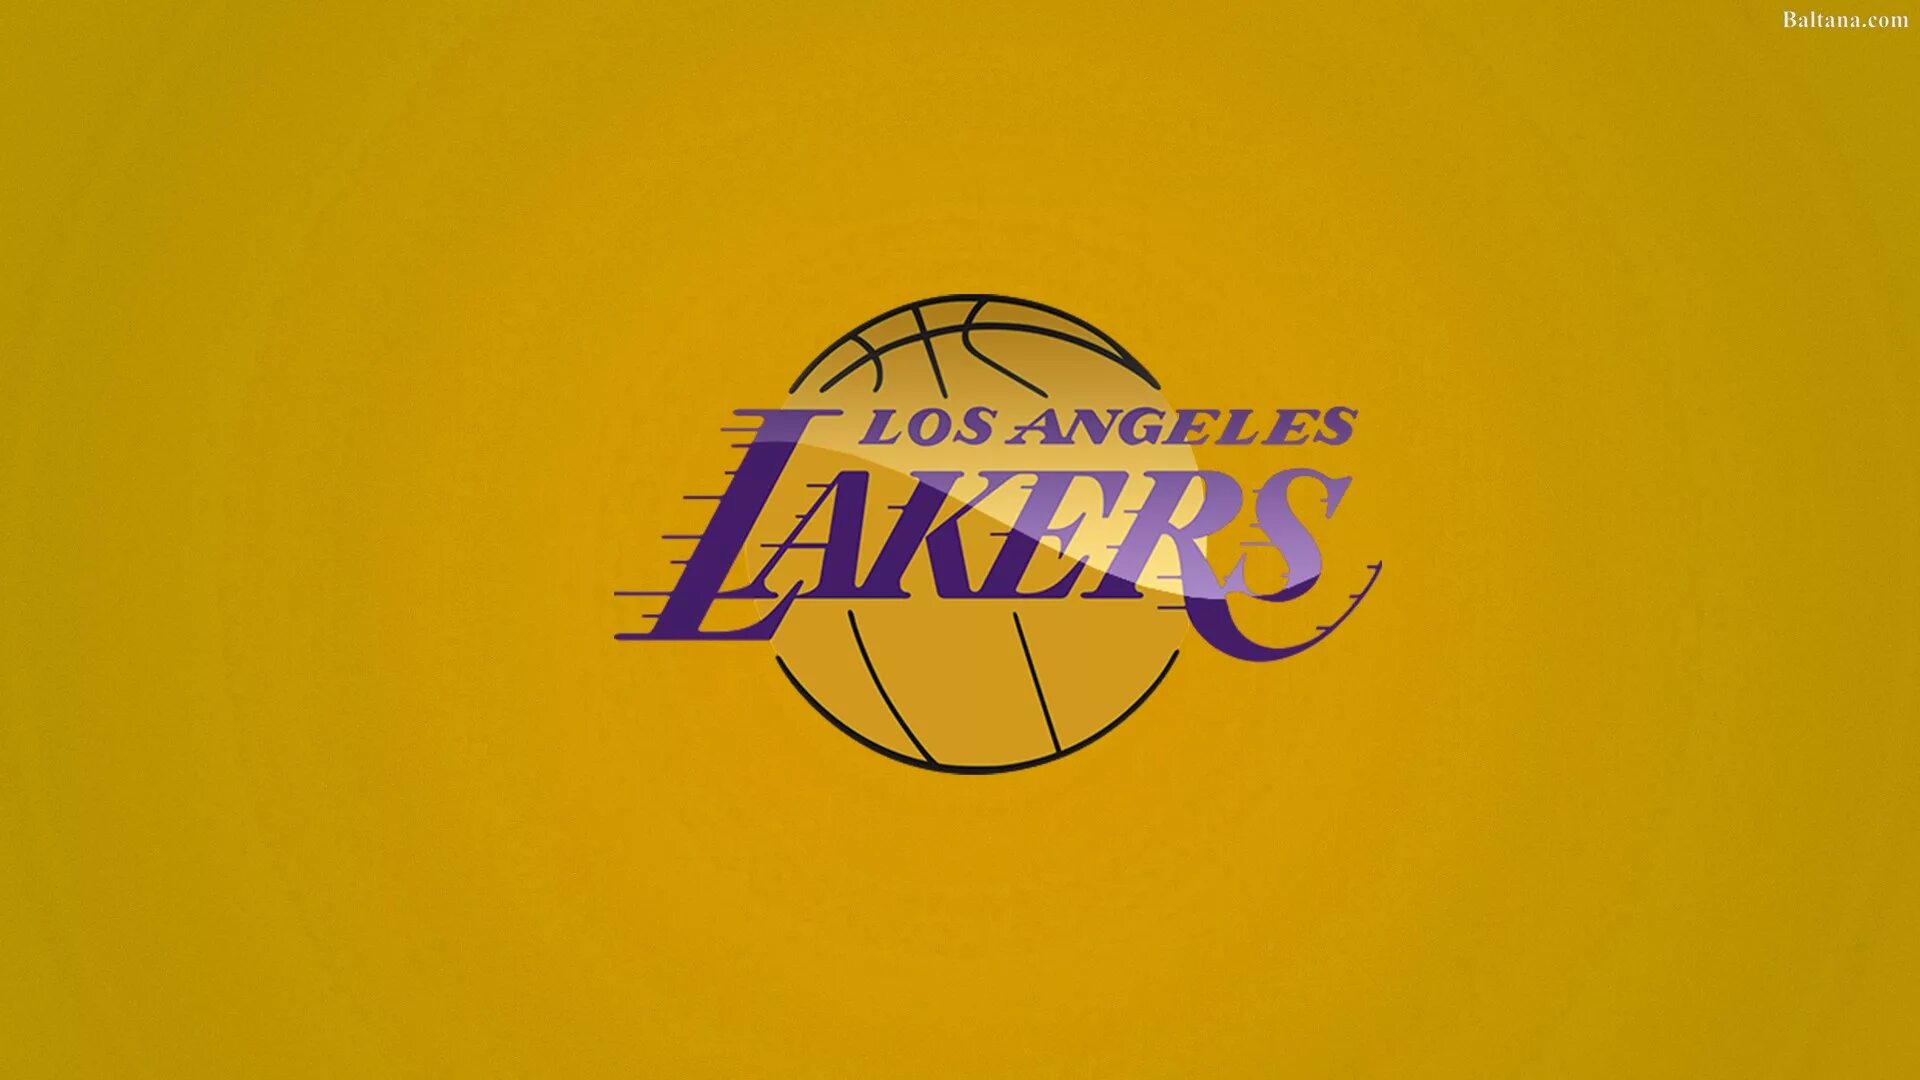 La lakers. Лос-Анджелес Лейкерс символ. Лос-Анджелес Лейкерс обои. Логотип команды Лос Анджелес Лейкерс 1980. Los Angeles Lakers обои.